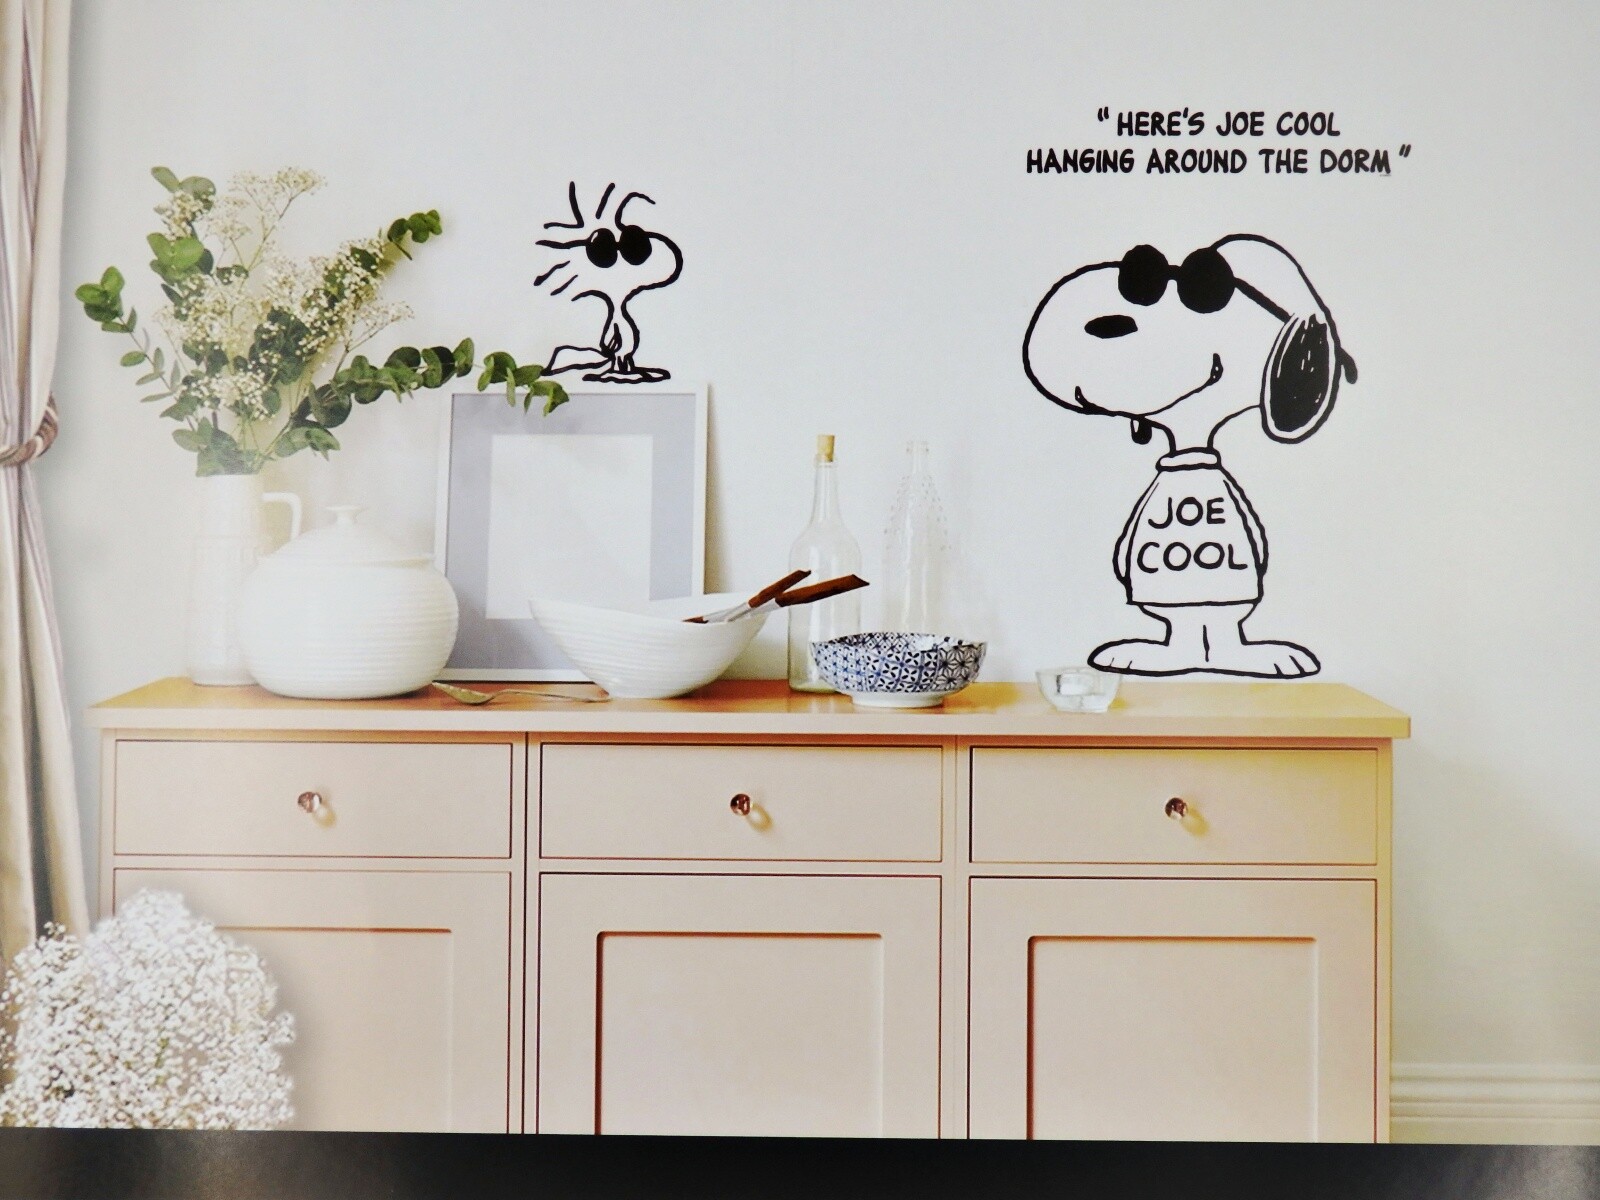 Snoopy スヌーピー 貼って剥がせるウォールステッカー 大判 Joe Coolの商品ページ 卸 仕入れサイト スーパーデリバリー